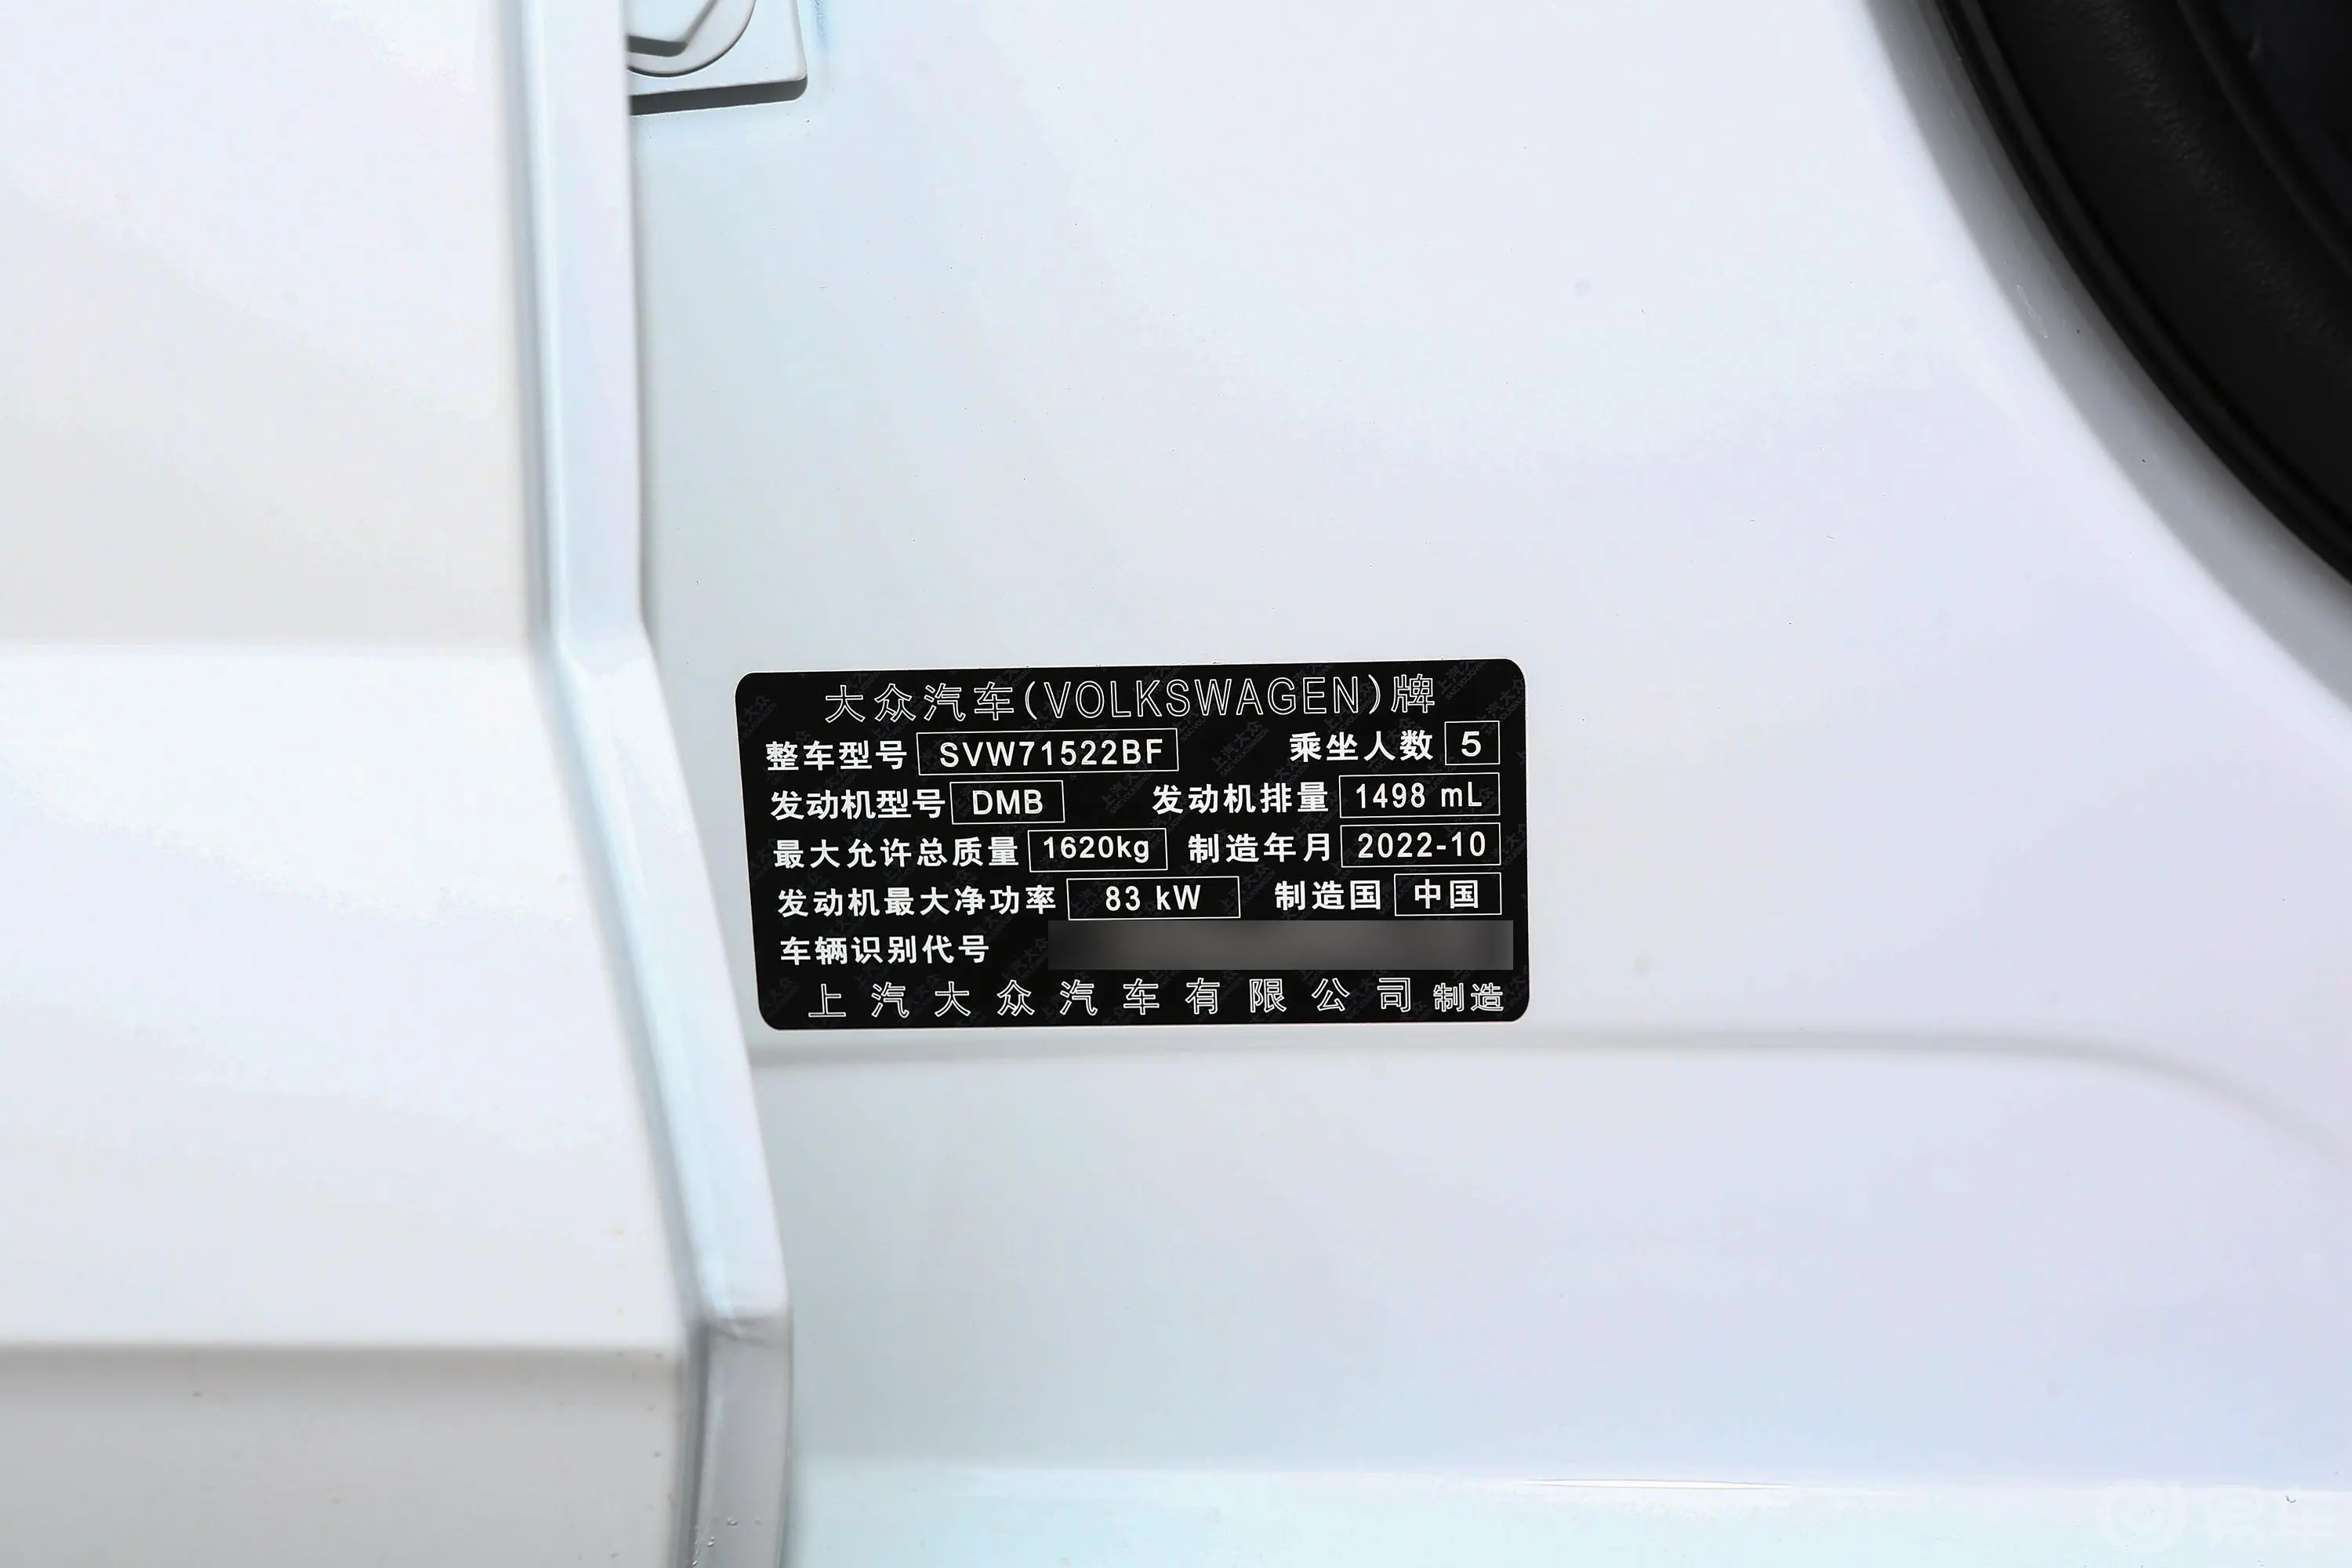 PoloPlus 1.5L 自动纵情乐活版车辆信息铭牌